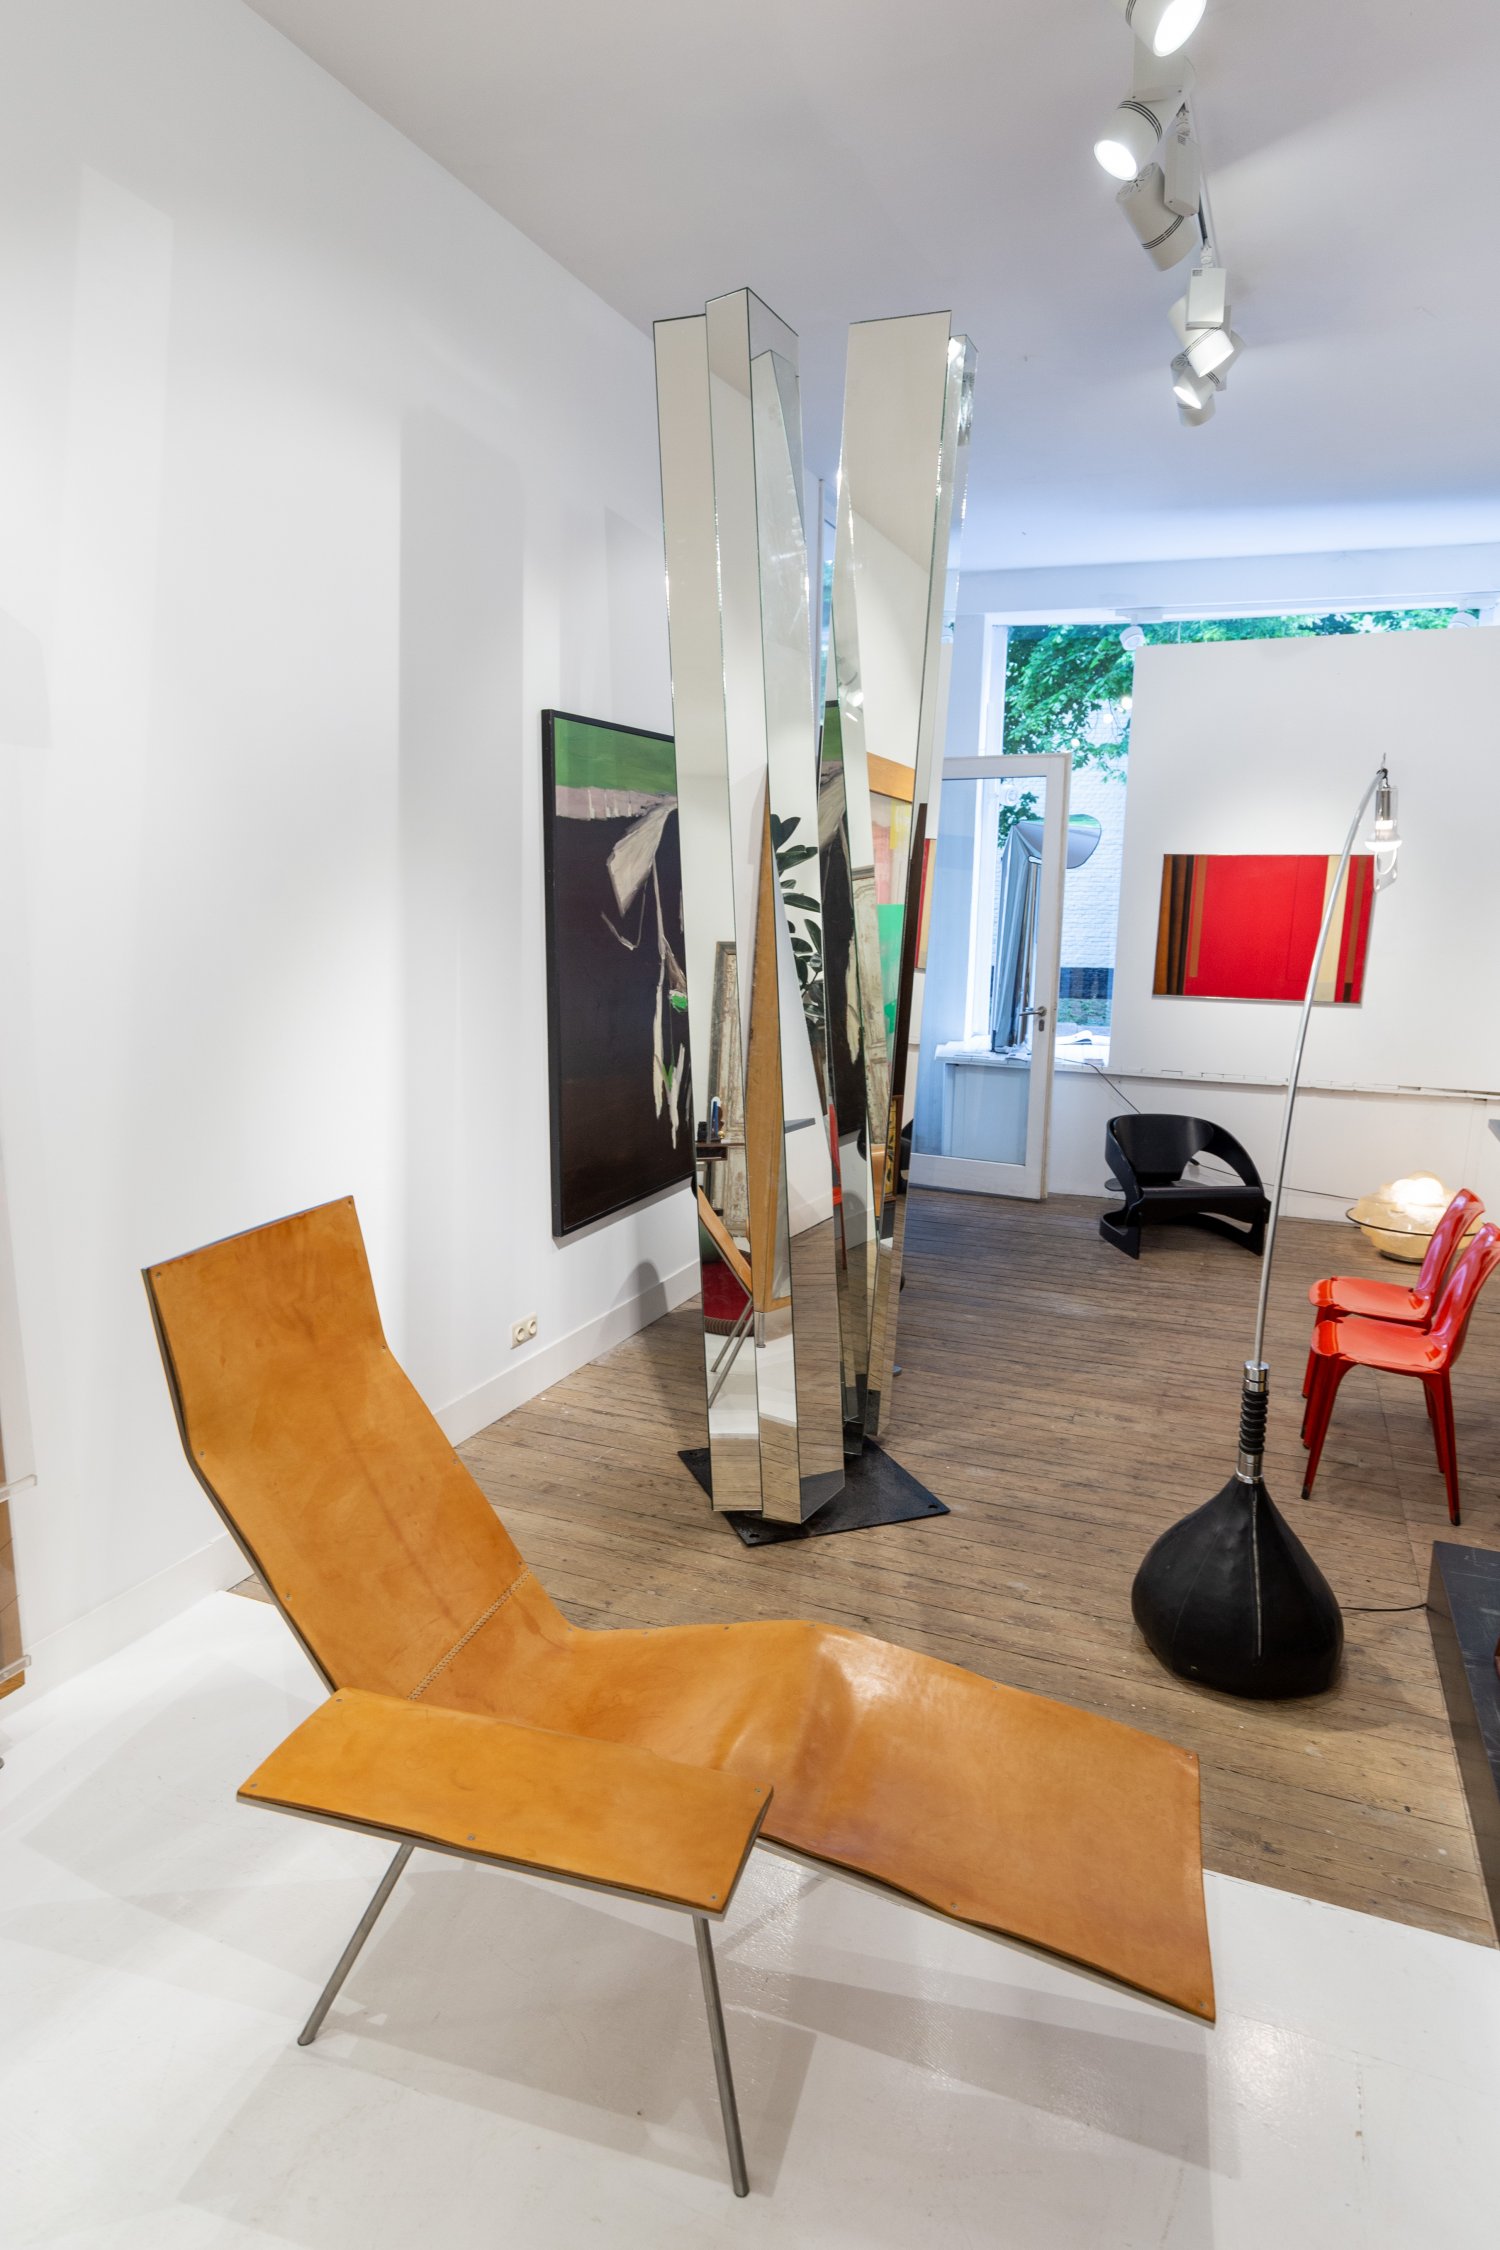 Maarten Van Severen Leather Lounge chair by Pastoe